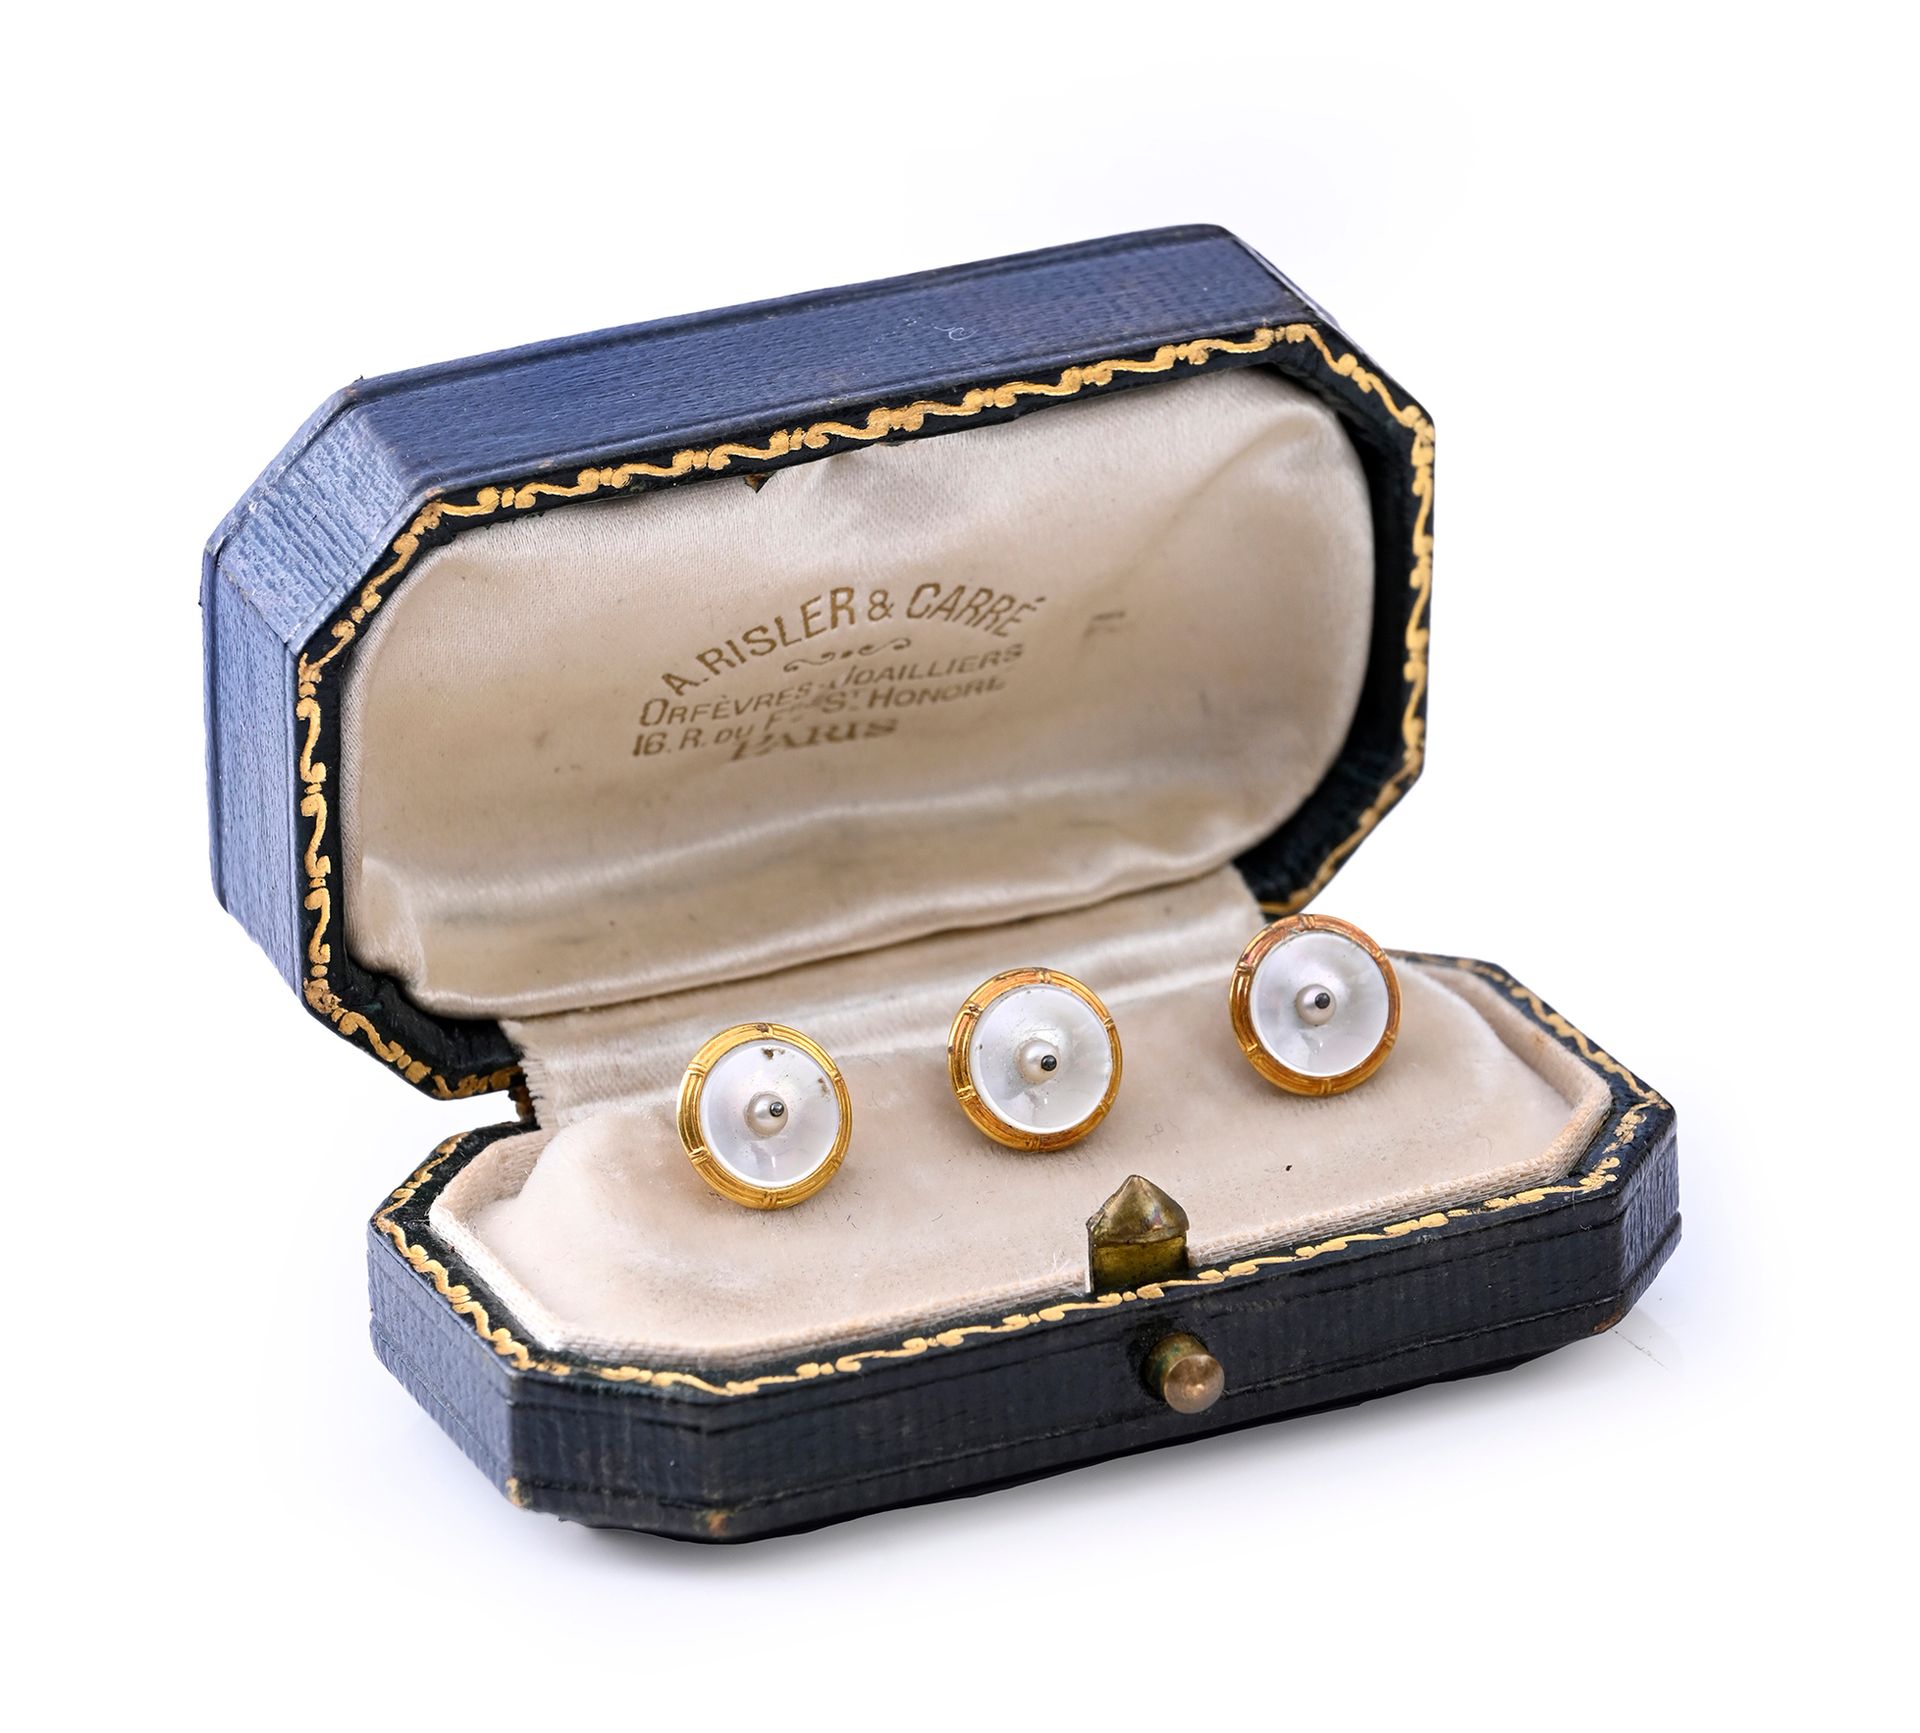 Null 一套三枚 18K 金（750 度）领扣，饰有珍珠母贝圆盘，交叉丝带镶嵌。
毛重：4.7 克
在 A.Risler & Carré